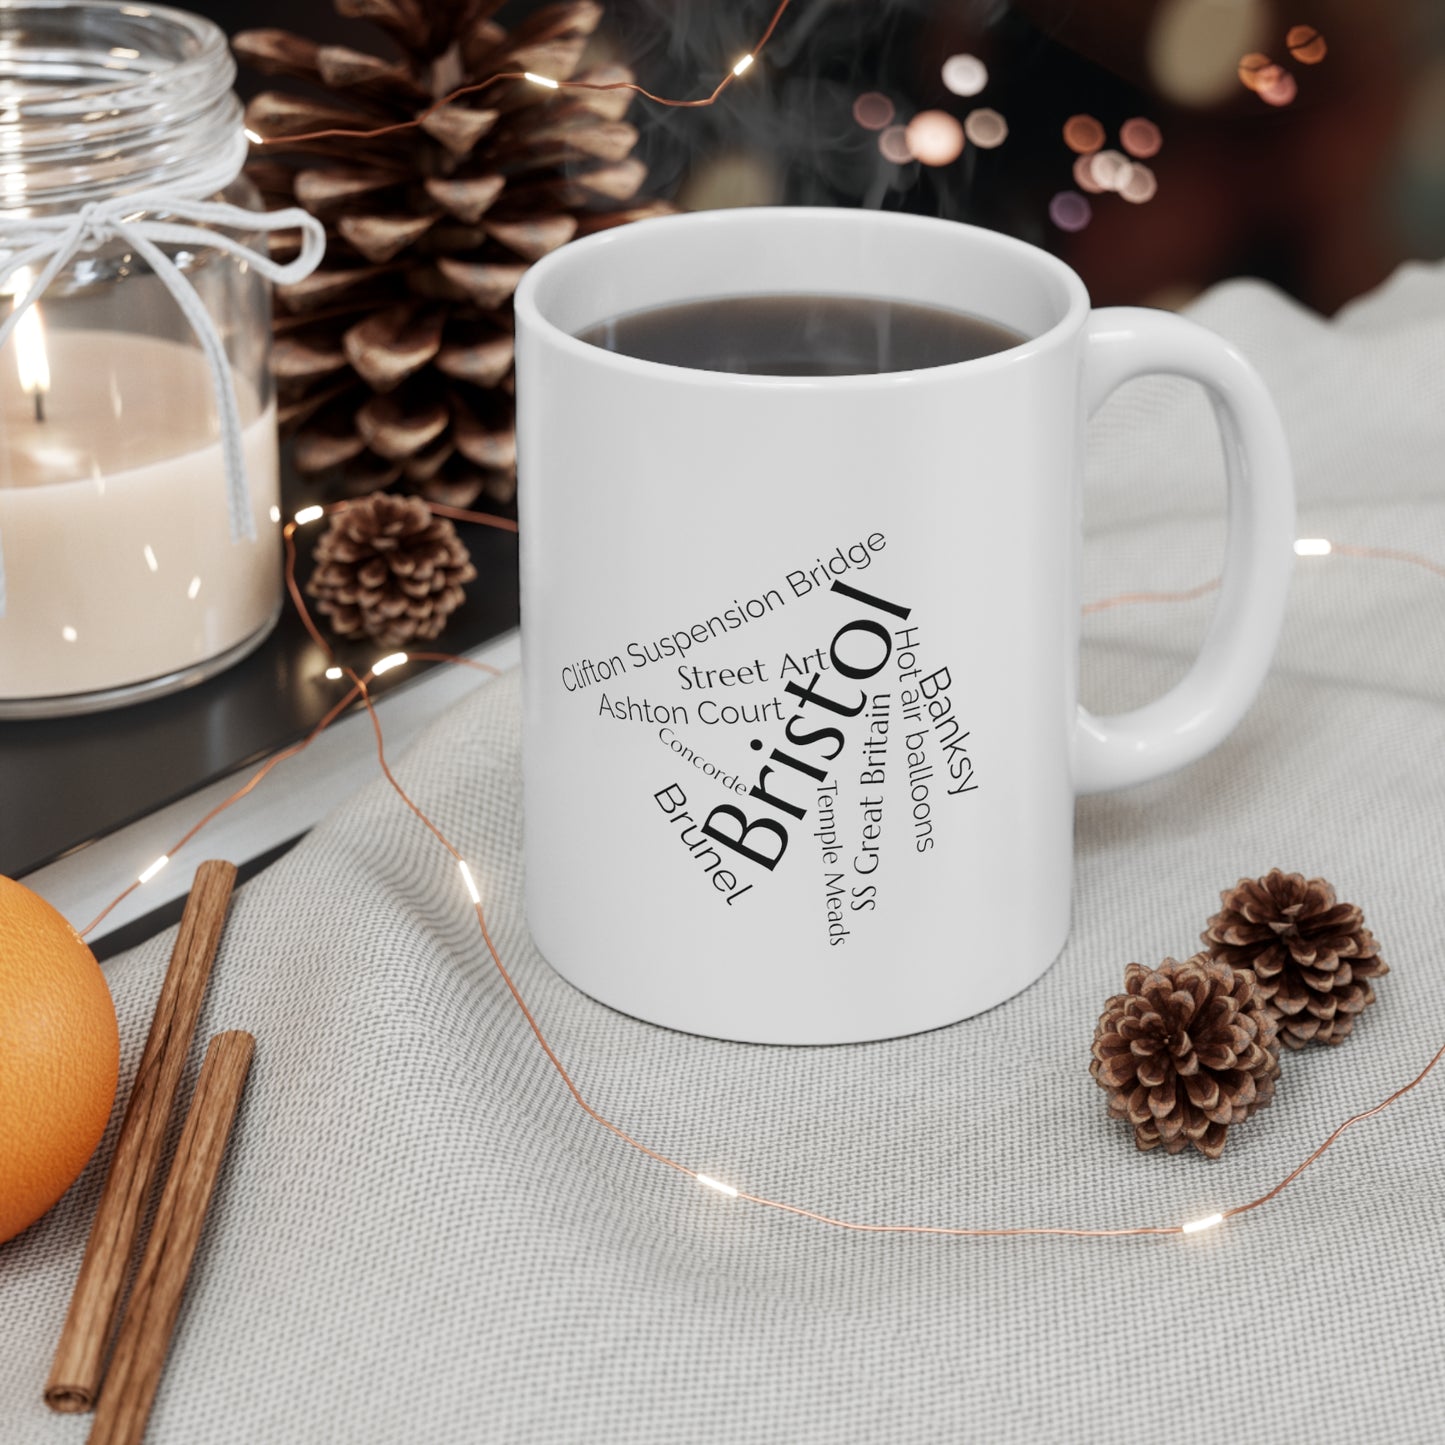 Bristol word mug, local mug, geography mug, gift, mug, coffee cup, word mug, wordcloud mug, christmas gift, birthday gift